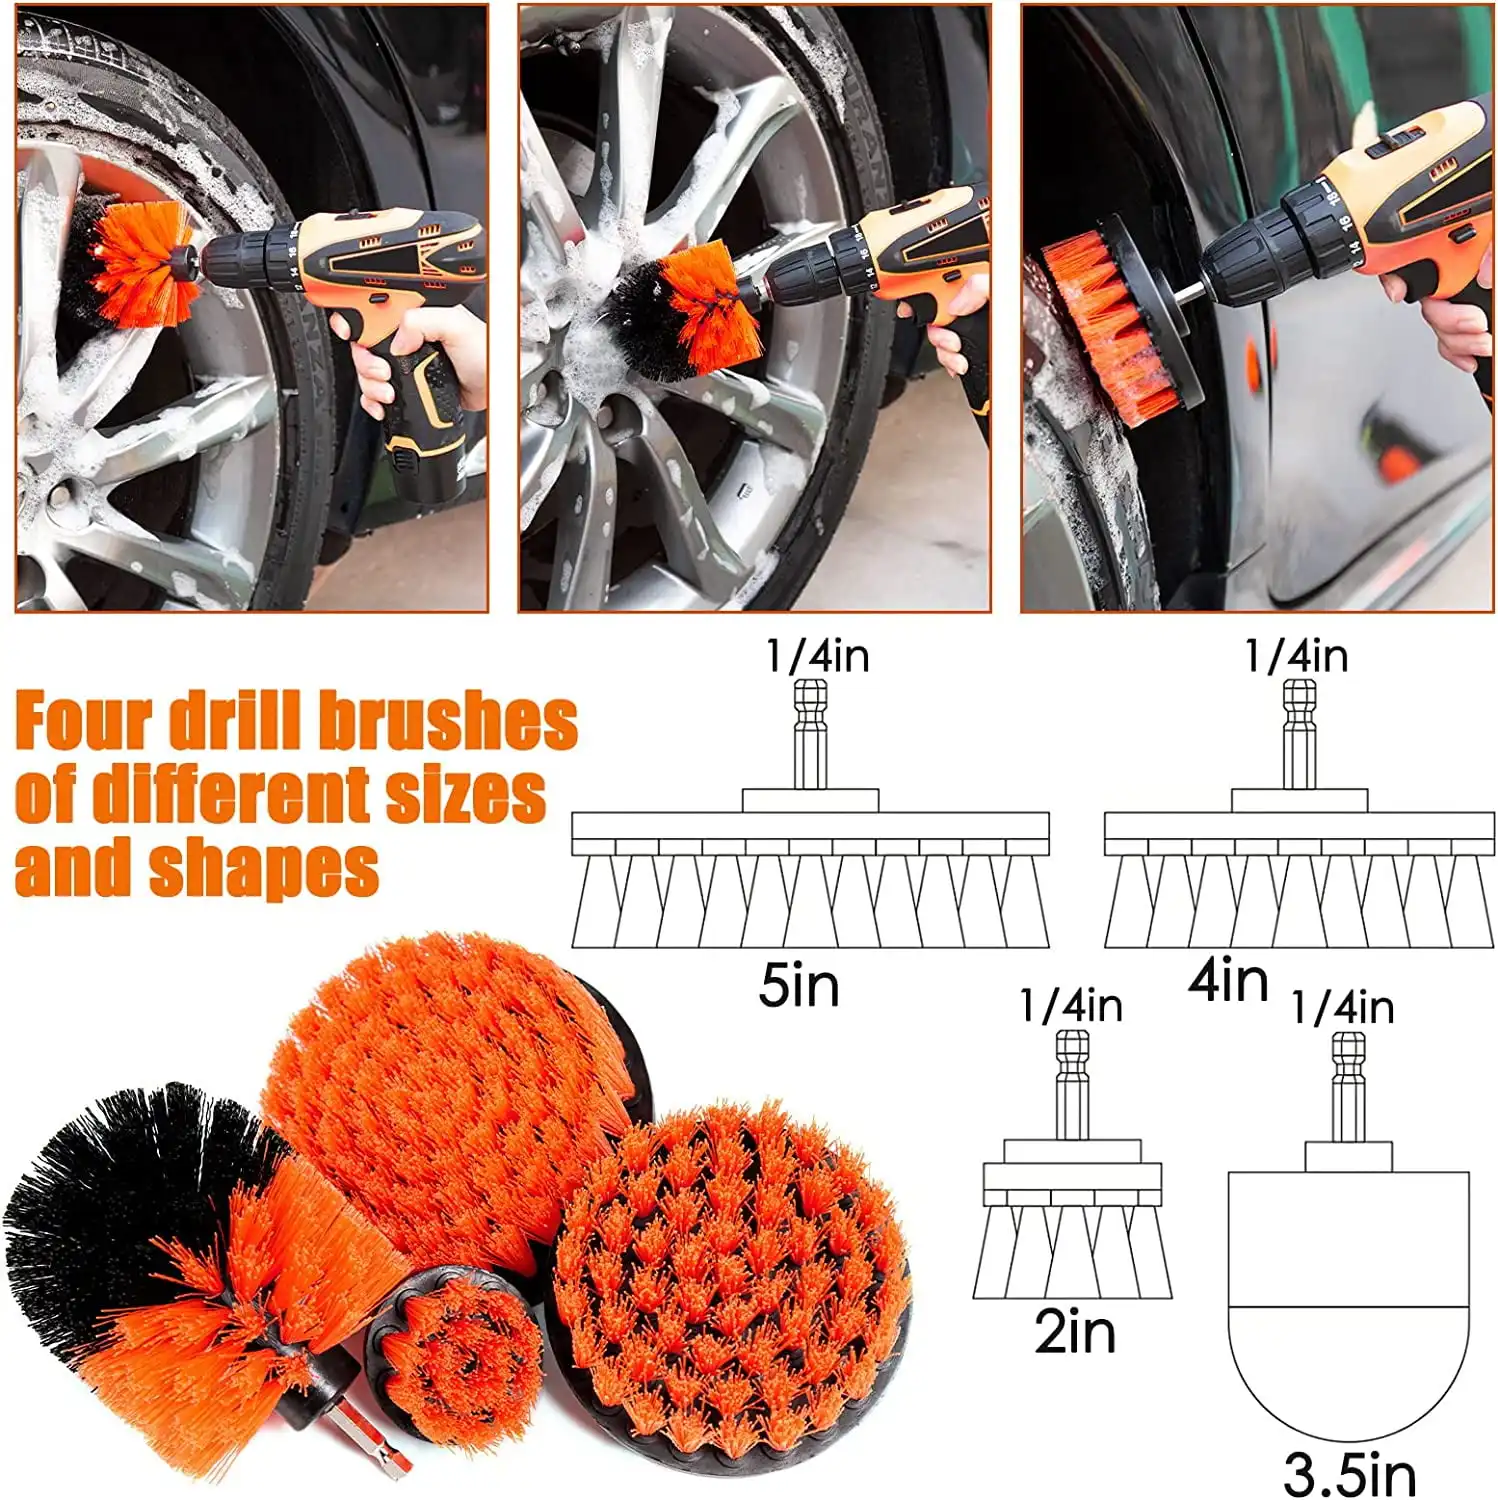 20 Stk. Autoaufbereitungs-Kit Reinigungsgel-Pinsel-Set für Autoaufbereitung Pinsel-Autoreinigungs-Wäsche-Kit Reinigungswerkzeuge-Kit